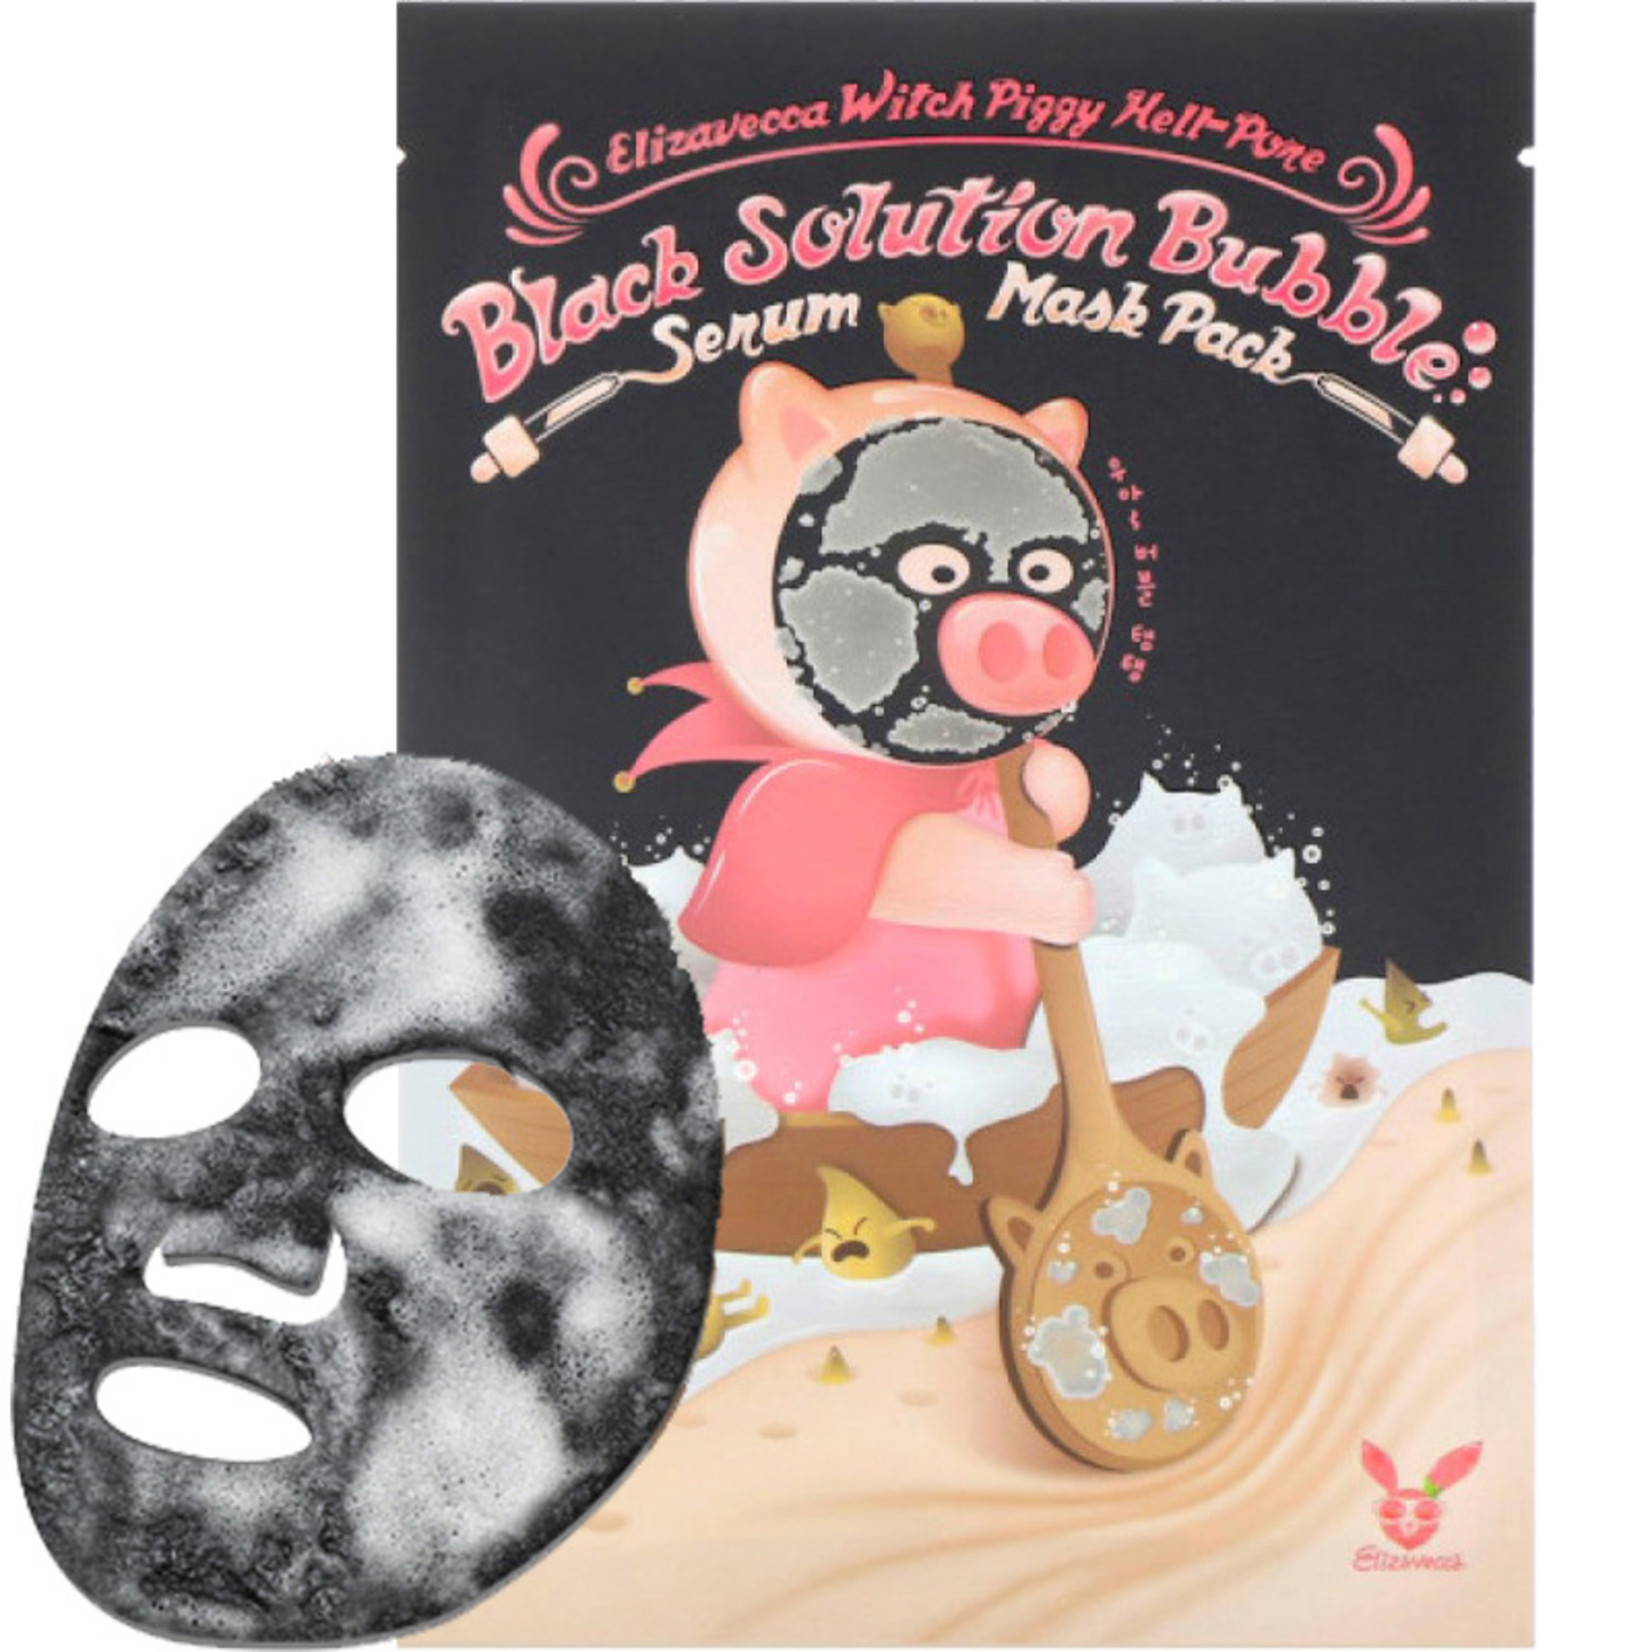 Elizavecca Witch Piggy Hell Pore Black Solution Bubble Serum Mask